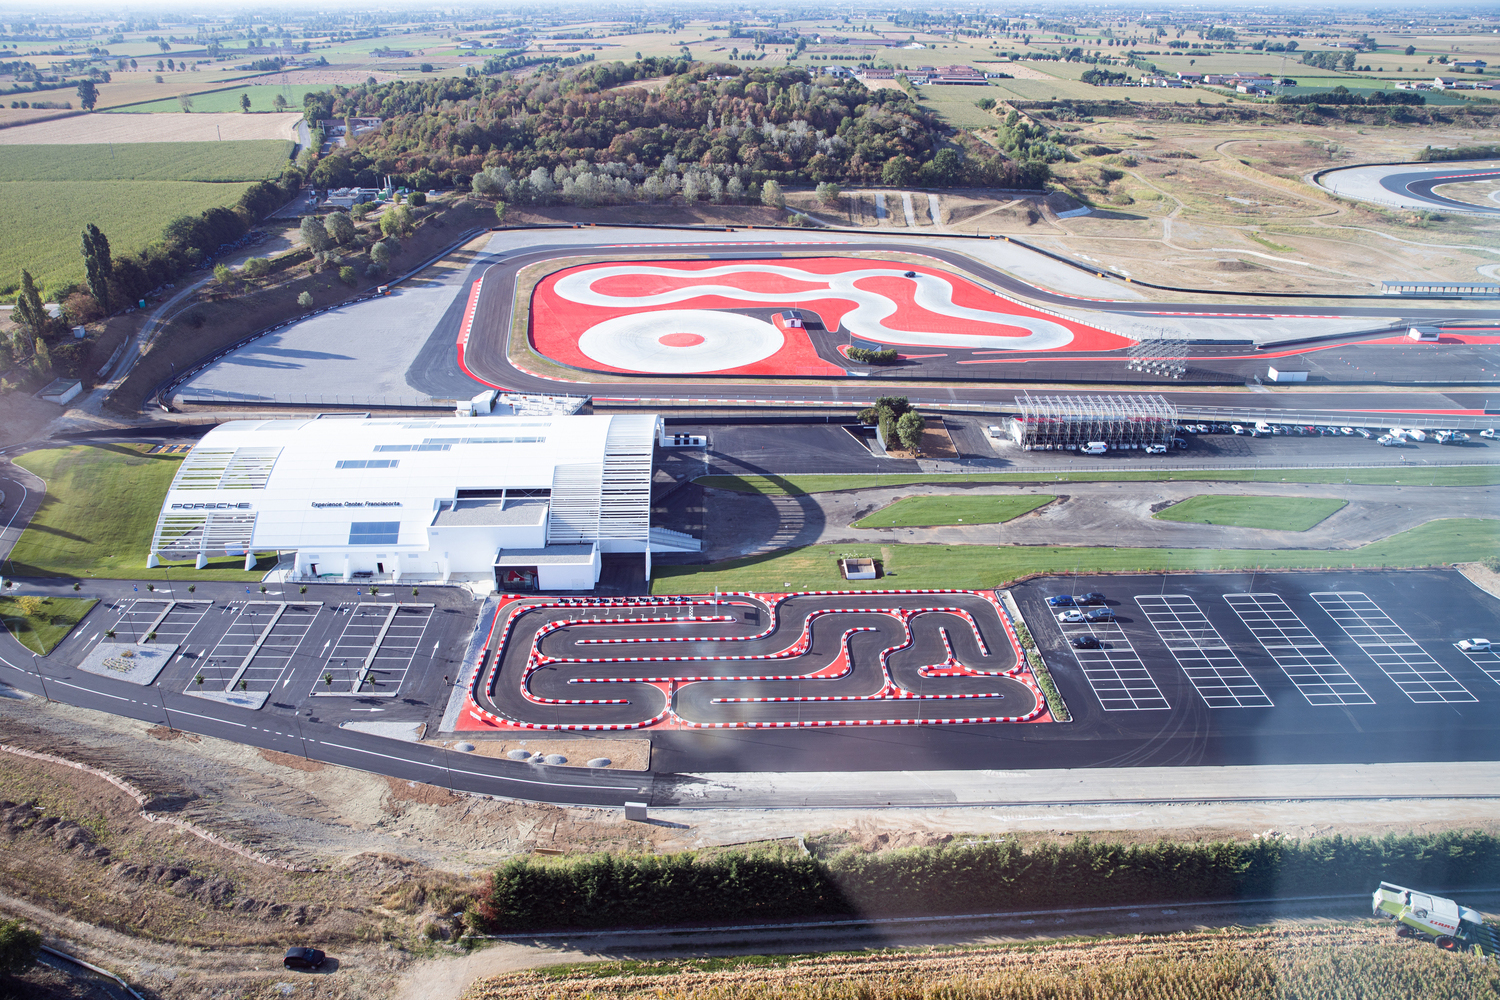 Impianto e piste del Porsche Experience Center Franciacorta. Ph. ©Claudio Lavenia/Getty Images for Porsche Italia